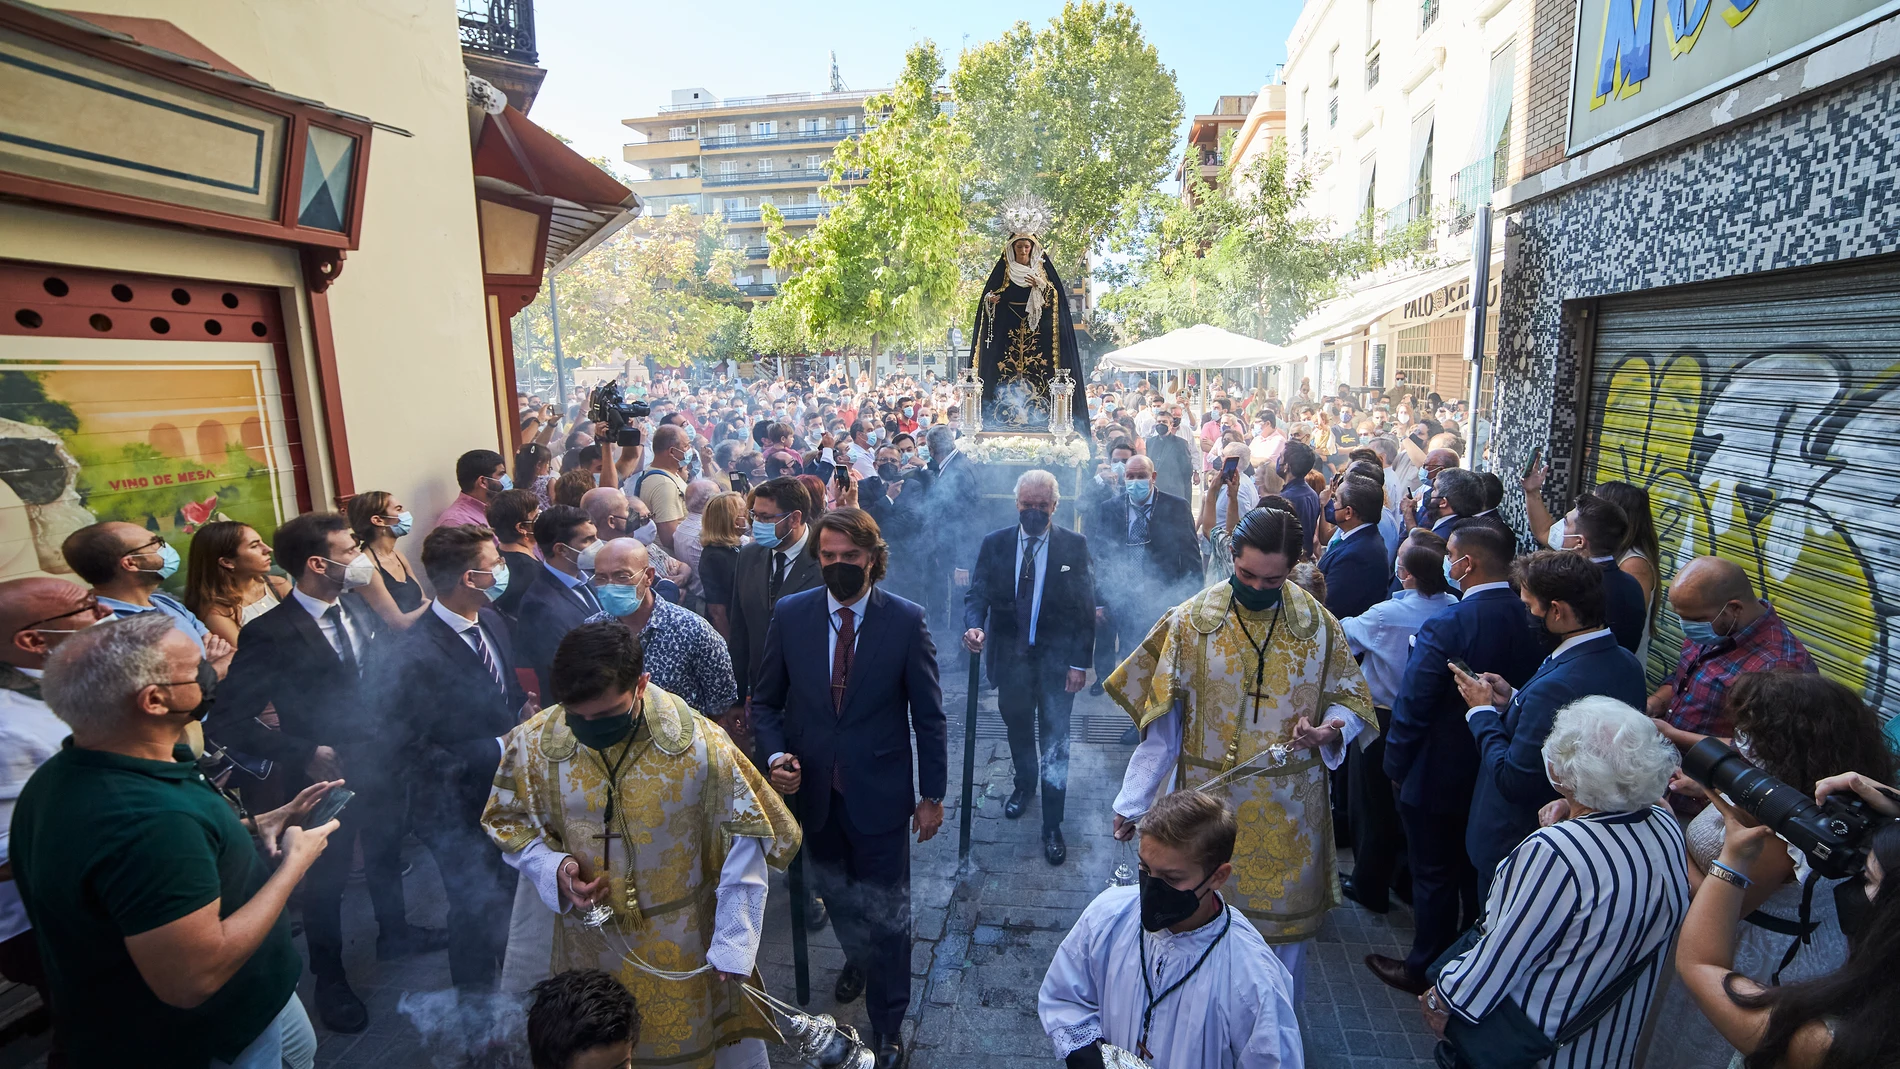 La Virgen es llevada en andas por las calles de centro de Sevilla, siendo la primera en salir después de la pandemia. Joaquín Corchero / Europa Press